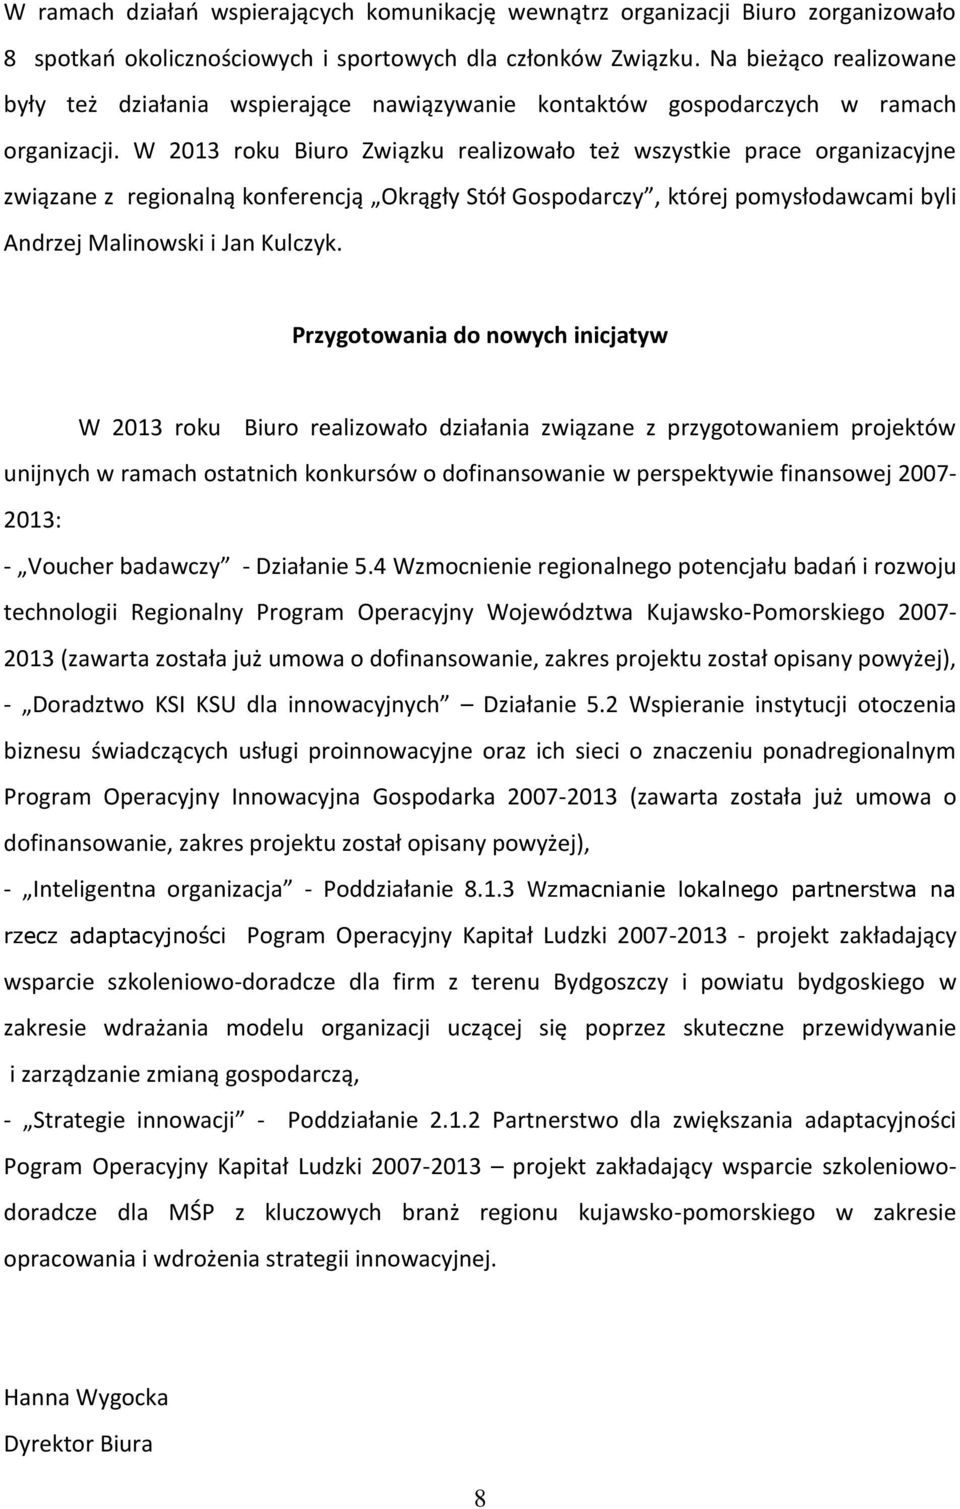 W 2013 roku Biuro Związku realizowało też wszystkie prace organizacyjne związane z regionalną konferencją Okrągły Stół Gospodarczy, której pomysłodawcami byli Andrzej Malinowski i Jan Kulczyk.